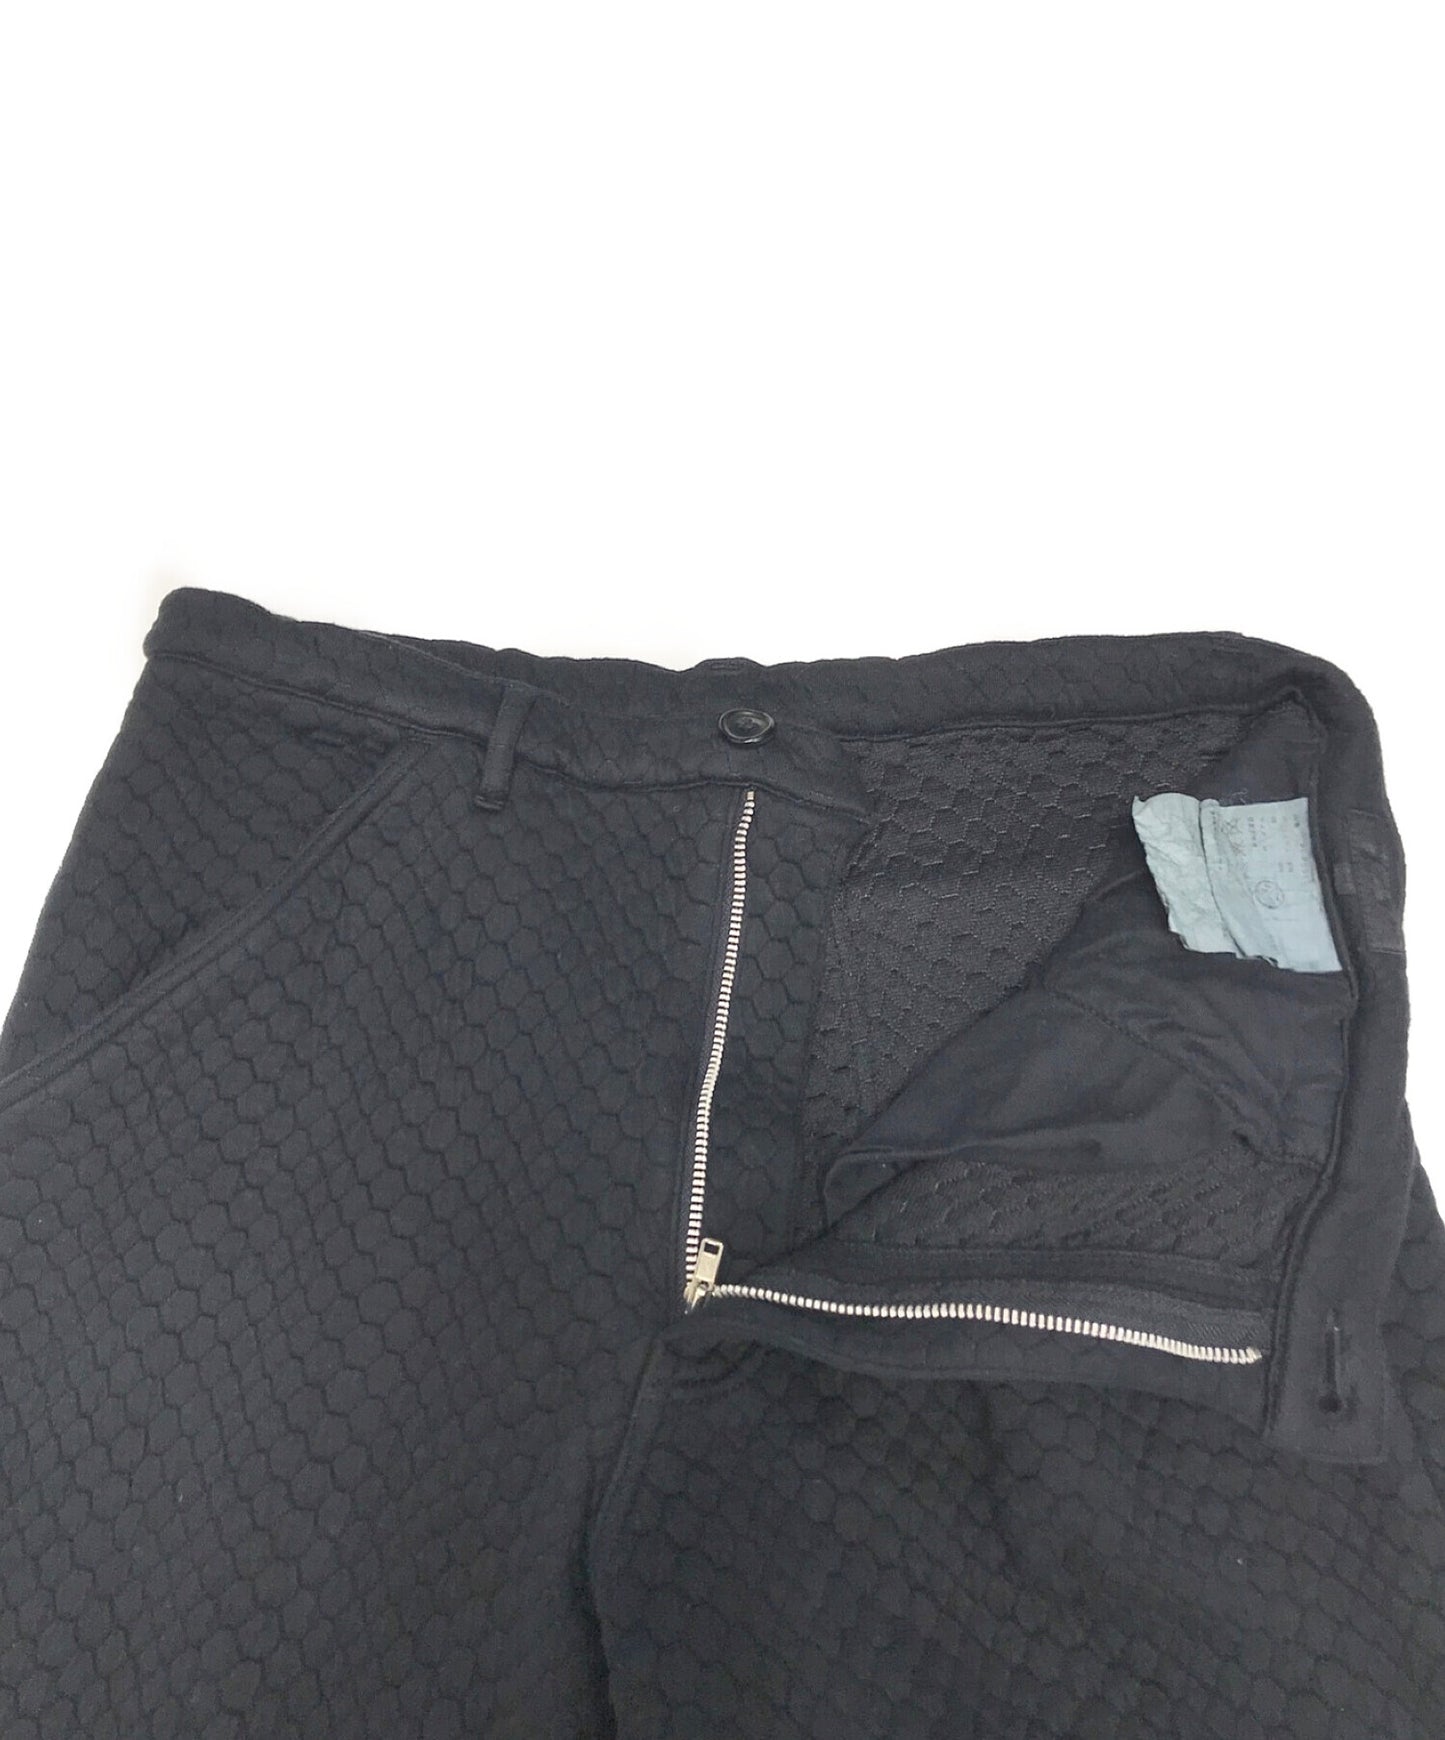 [Pre-owned] COMME des GARCONS Homme Plus Jacquard sweat pants PI-P031